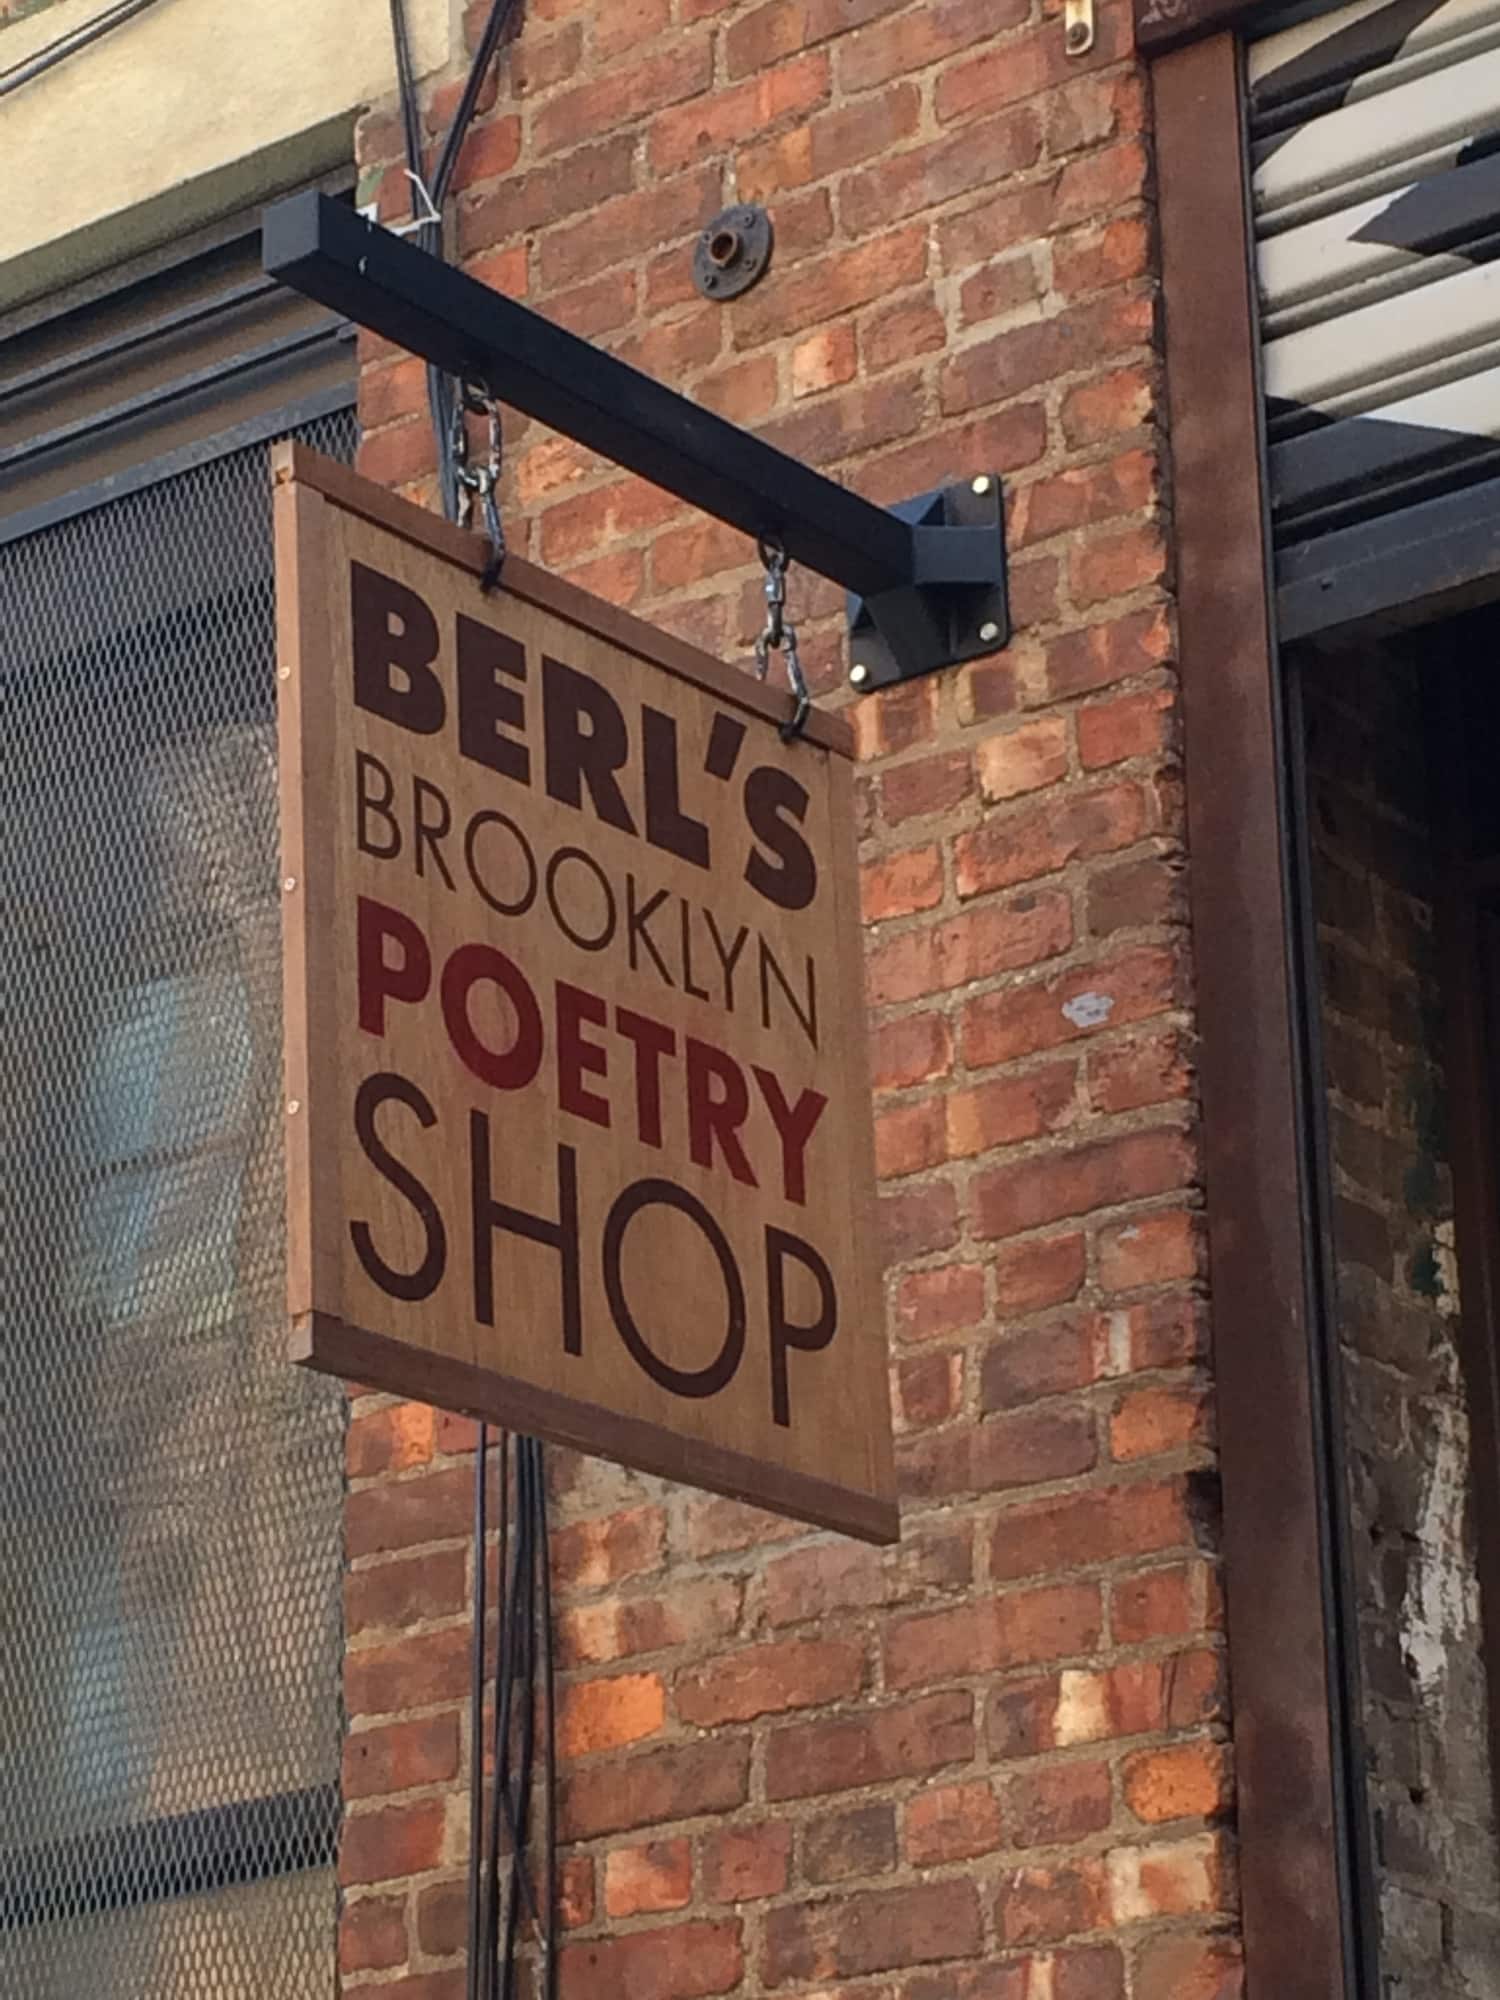 Berls Brooklyn Poetry Shop